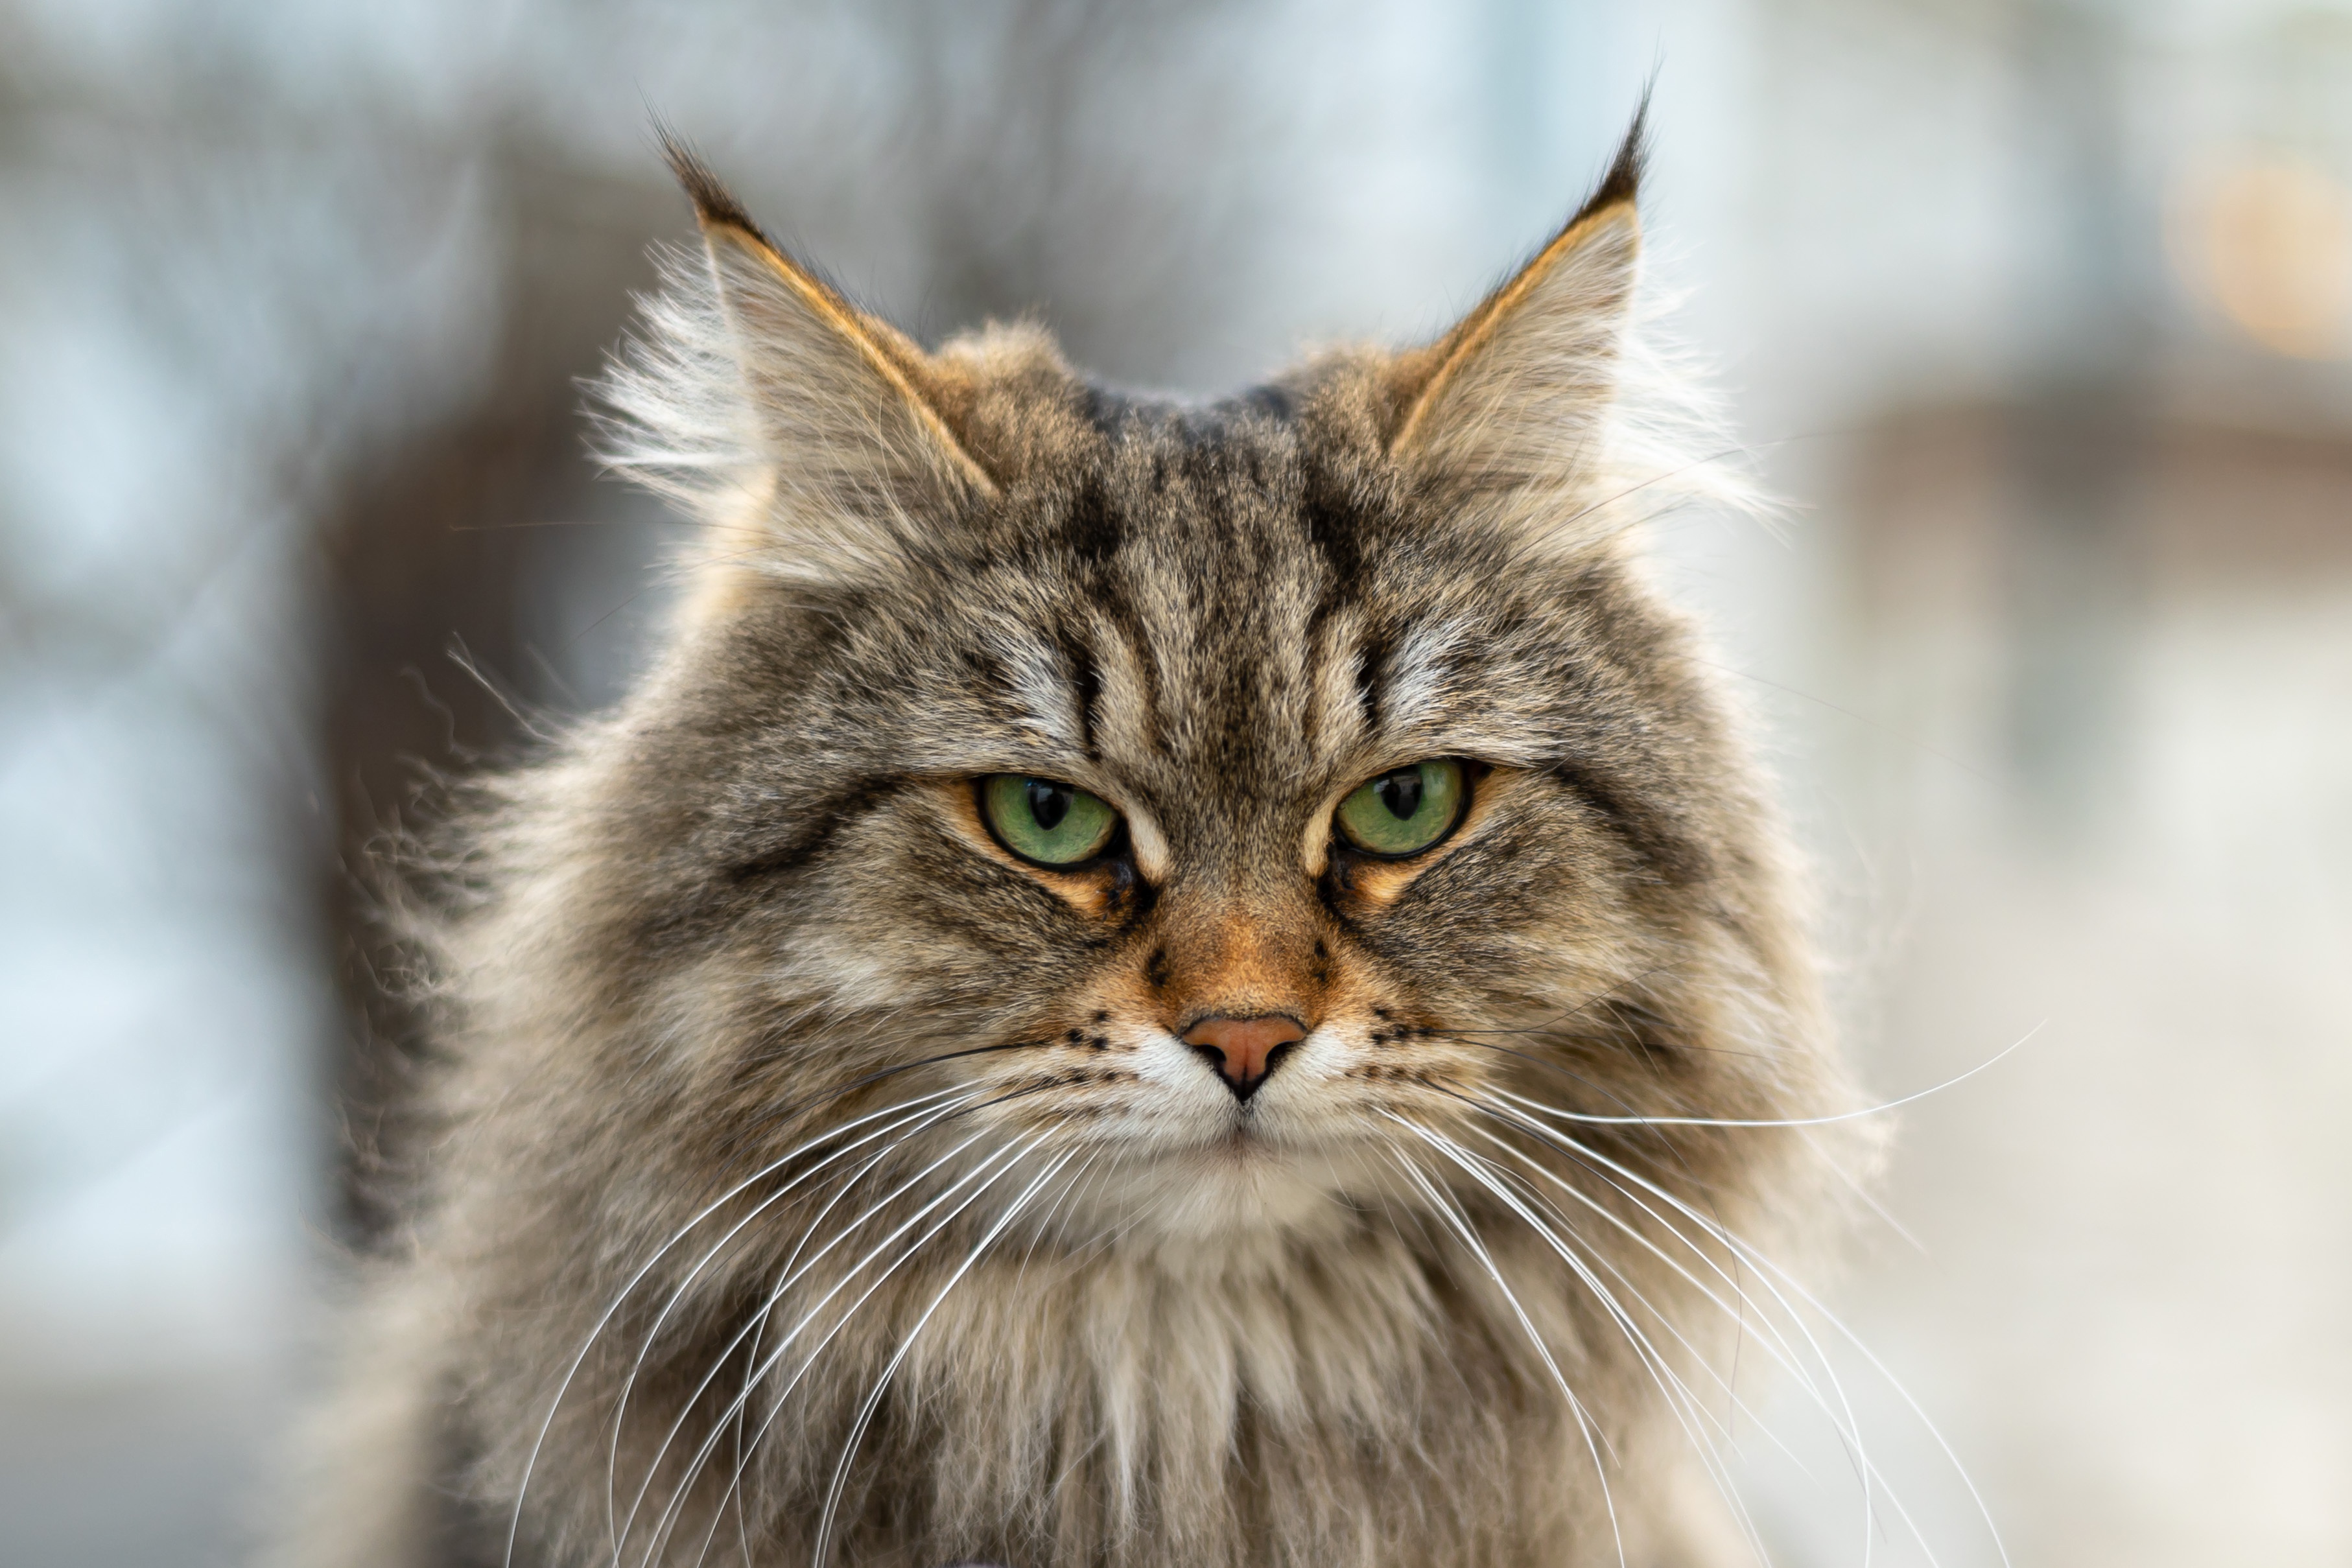 Sfondi Gatti Siberian cat Peloso Baffi vibrisse Il muso Sguardo Animali 3628x2419 gatto domestico animale Colpo d'occhio